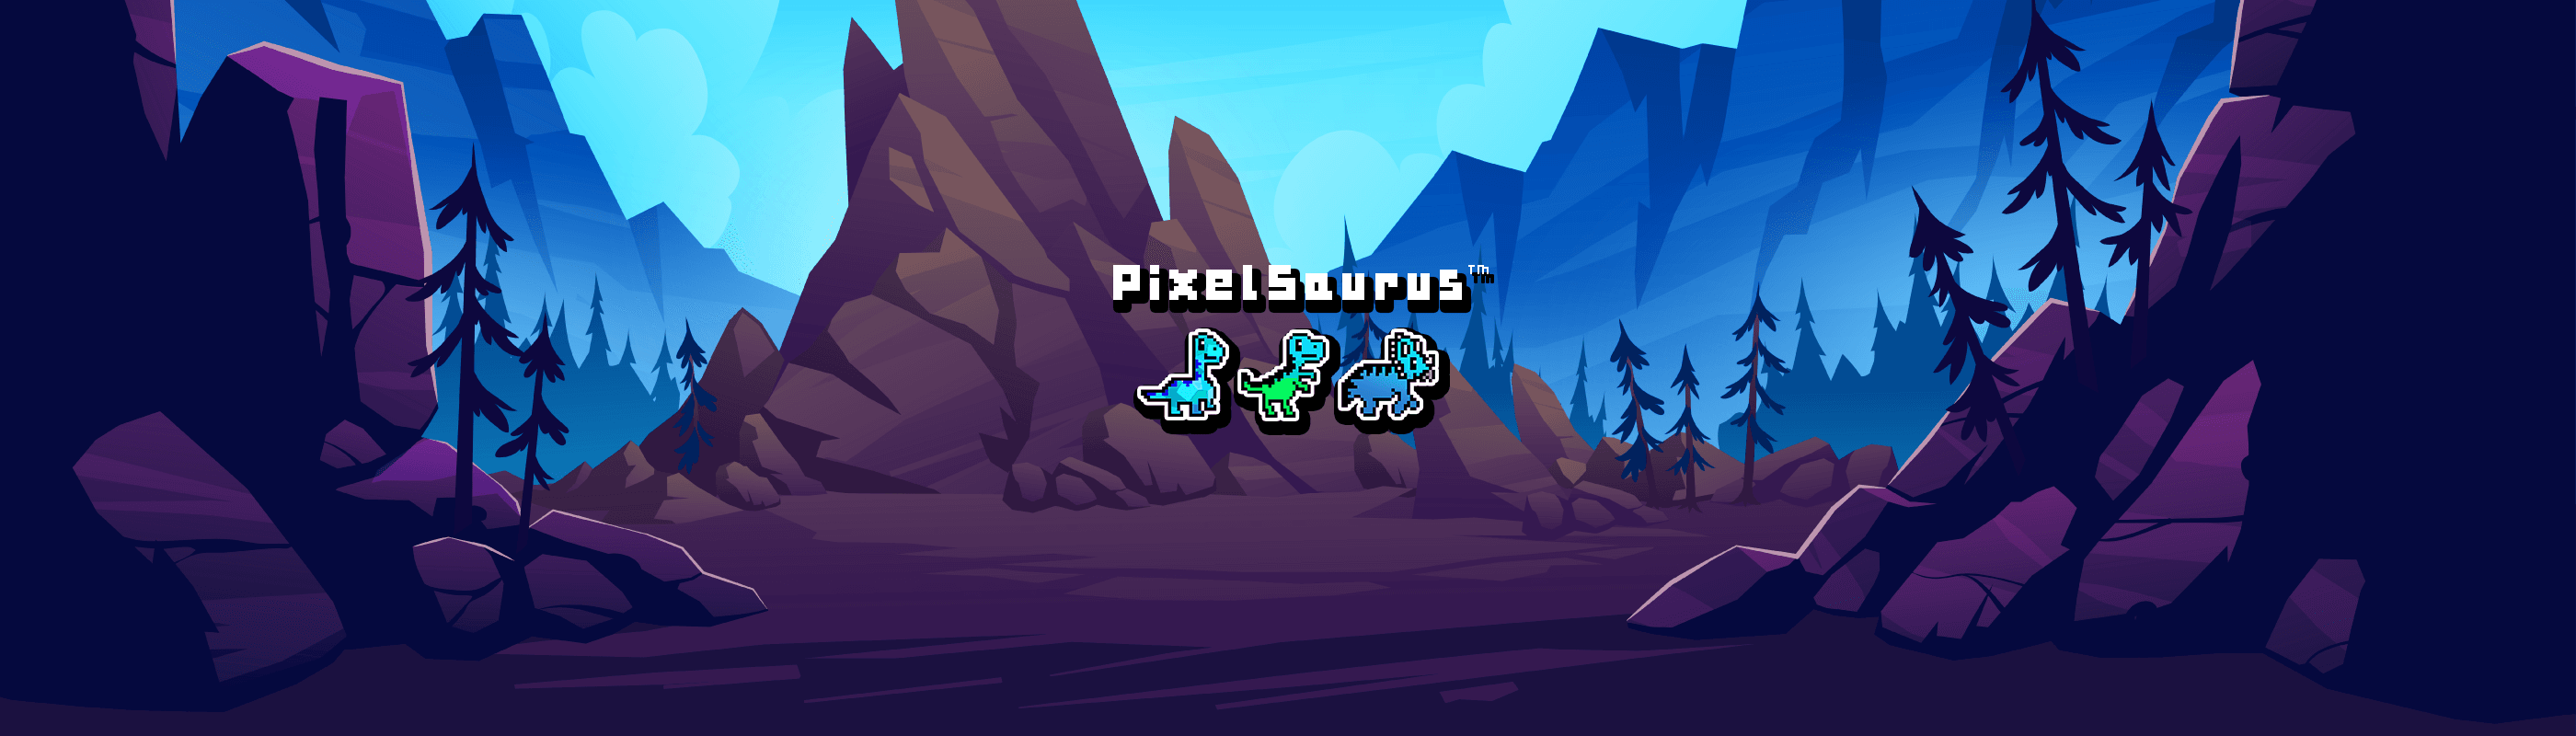 PixelSaurusMinting banner